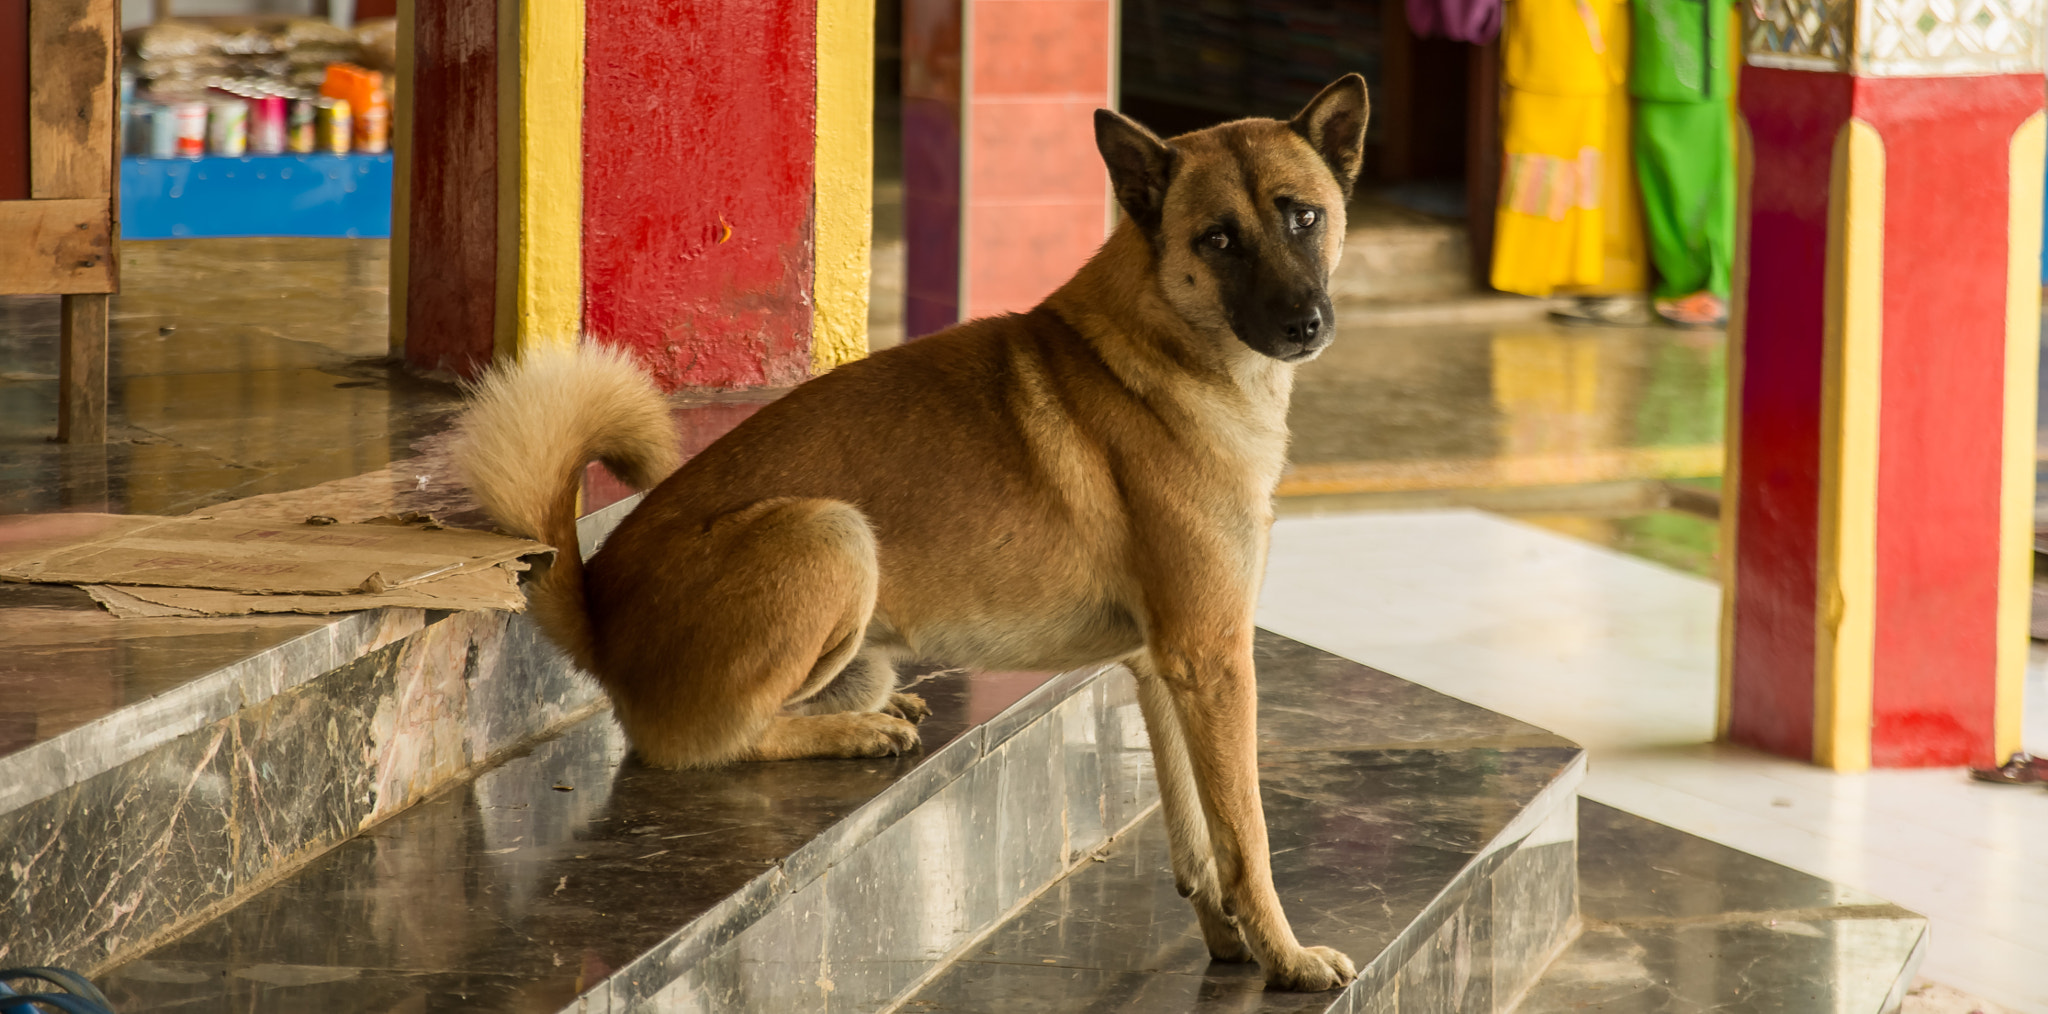 Pentax K-5 + Sigma 17-70mm F2.8-4 DC Macro HSM Contemporary sample photo. Le chien dans le temple myanmar photography